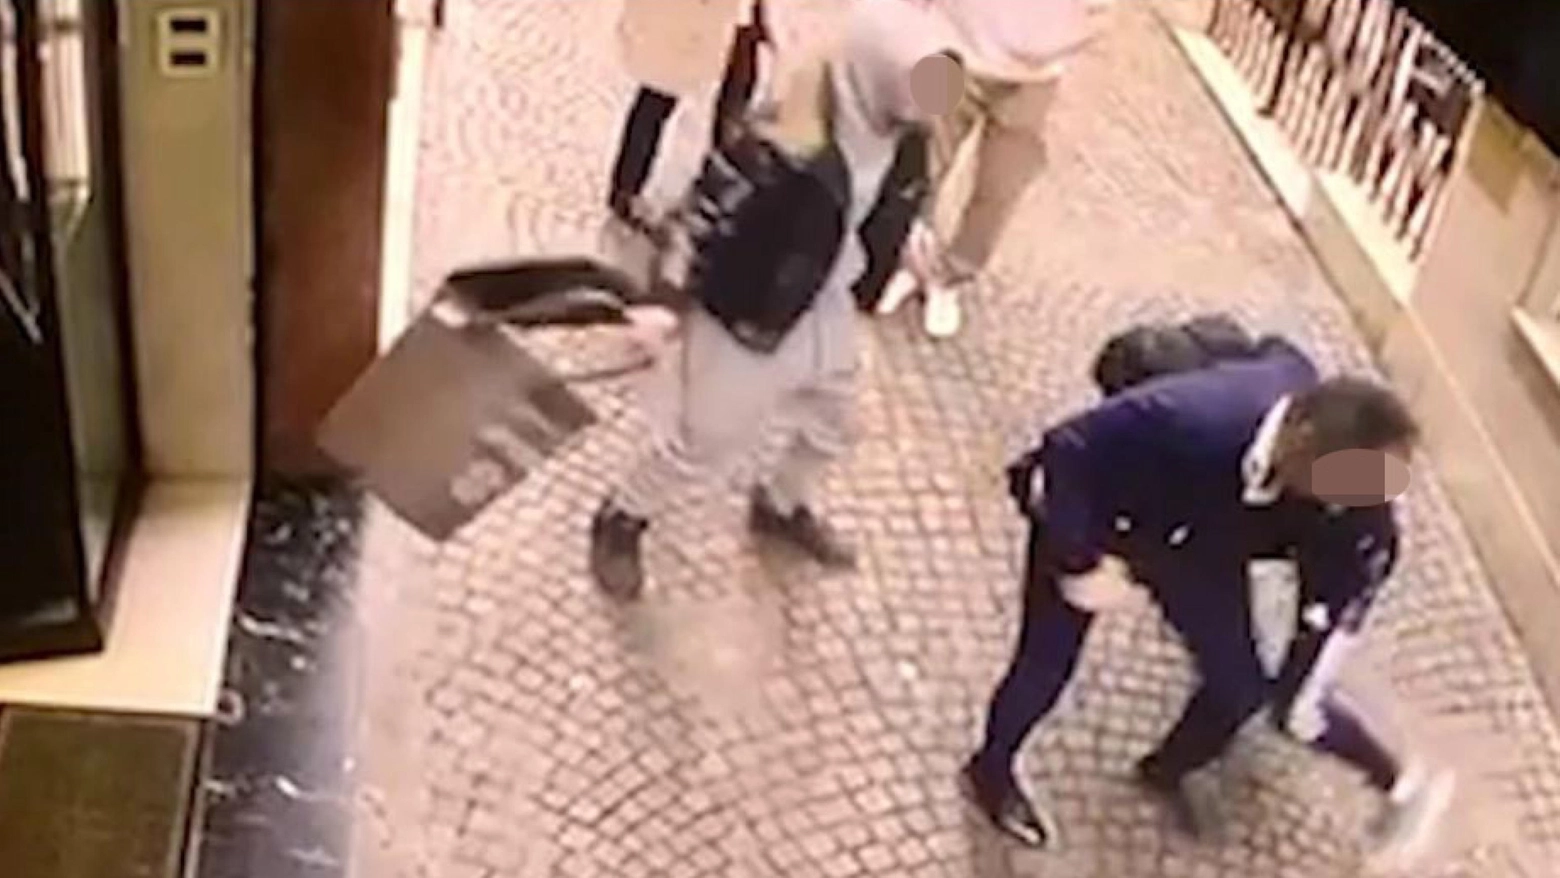 Pestato da due minorenni mentre cerca di difendere una donna: il frame di una telecamera